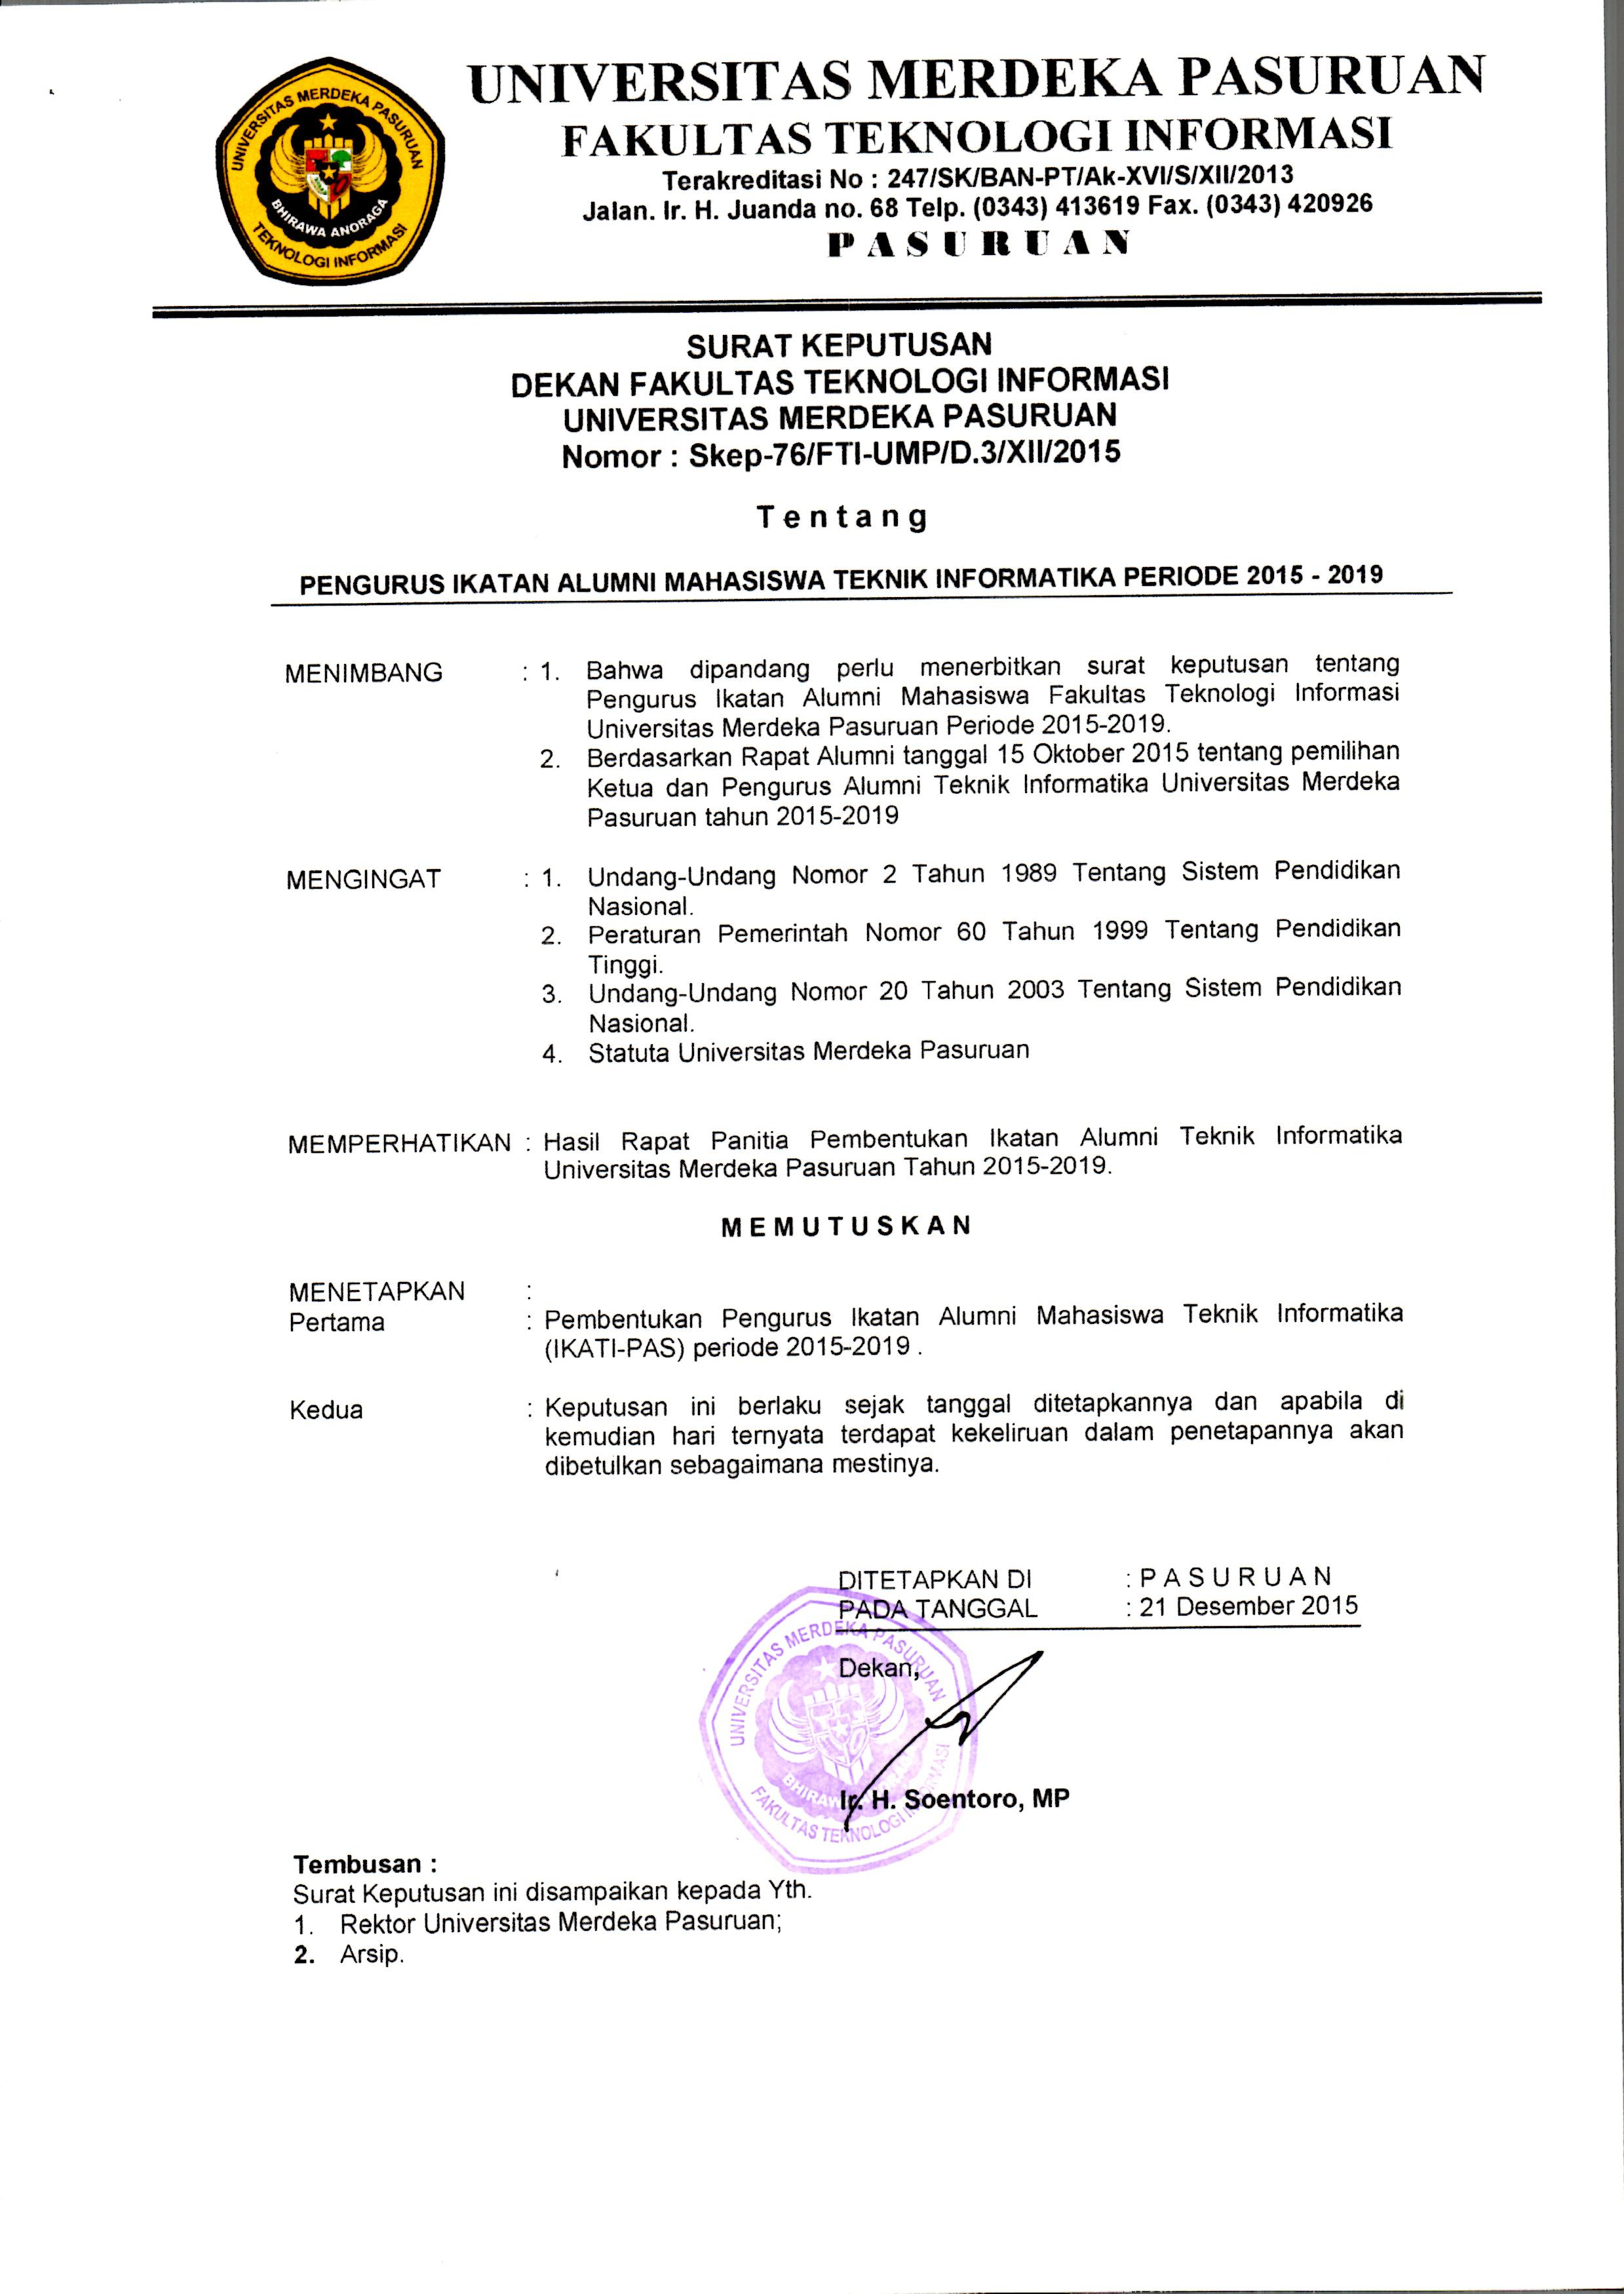 Oct 25, 2011 · contoh surat permohonan kerja untuk memohon perkerjaan didalam sektor swasta dan kerajaan. Contoh Surat Keputusan Organisasi Nusagates